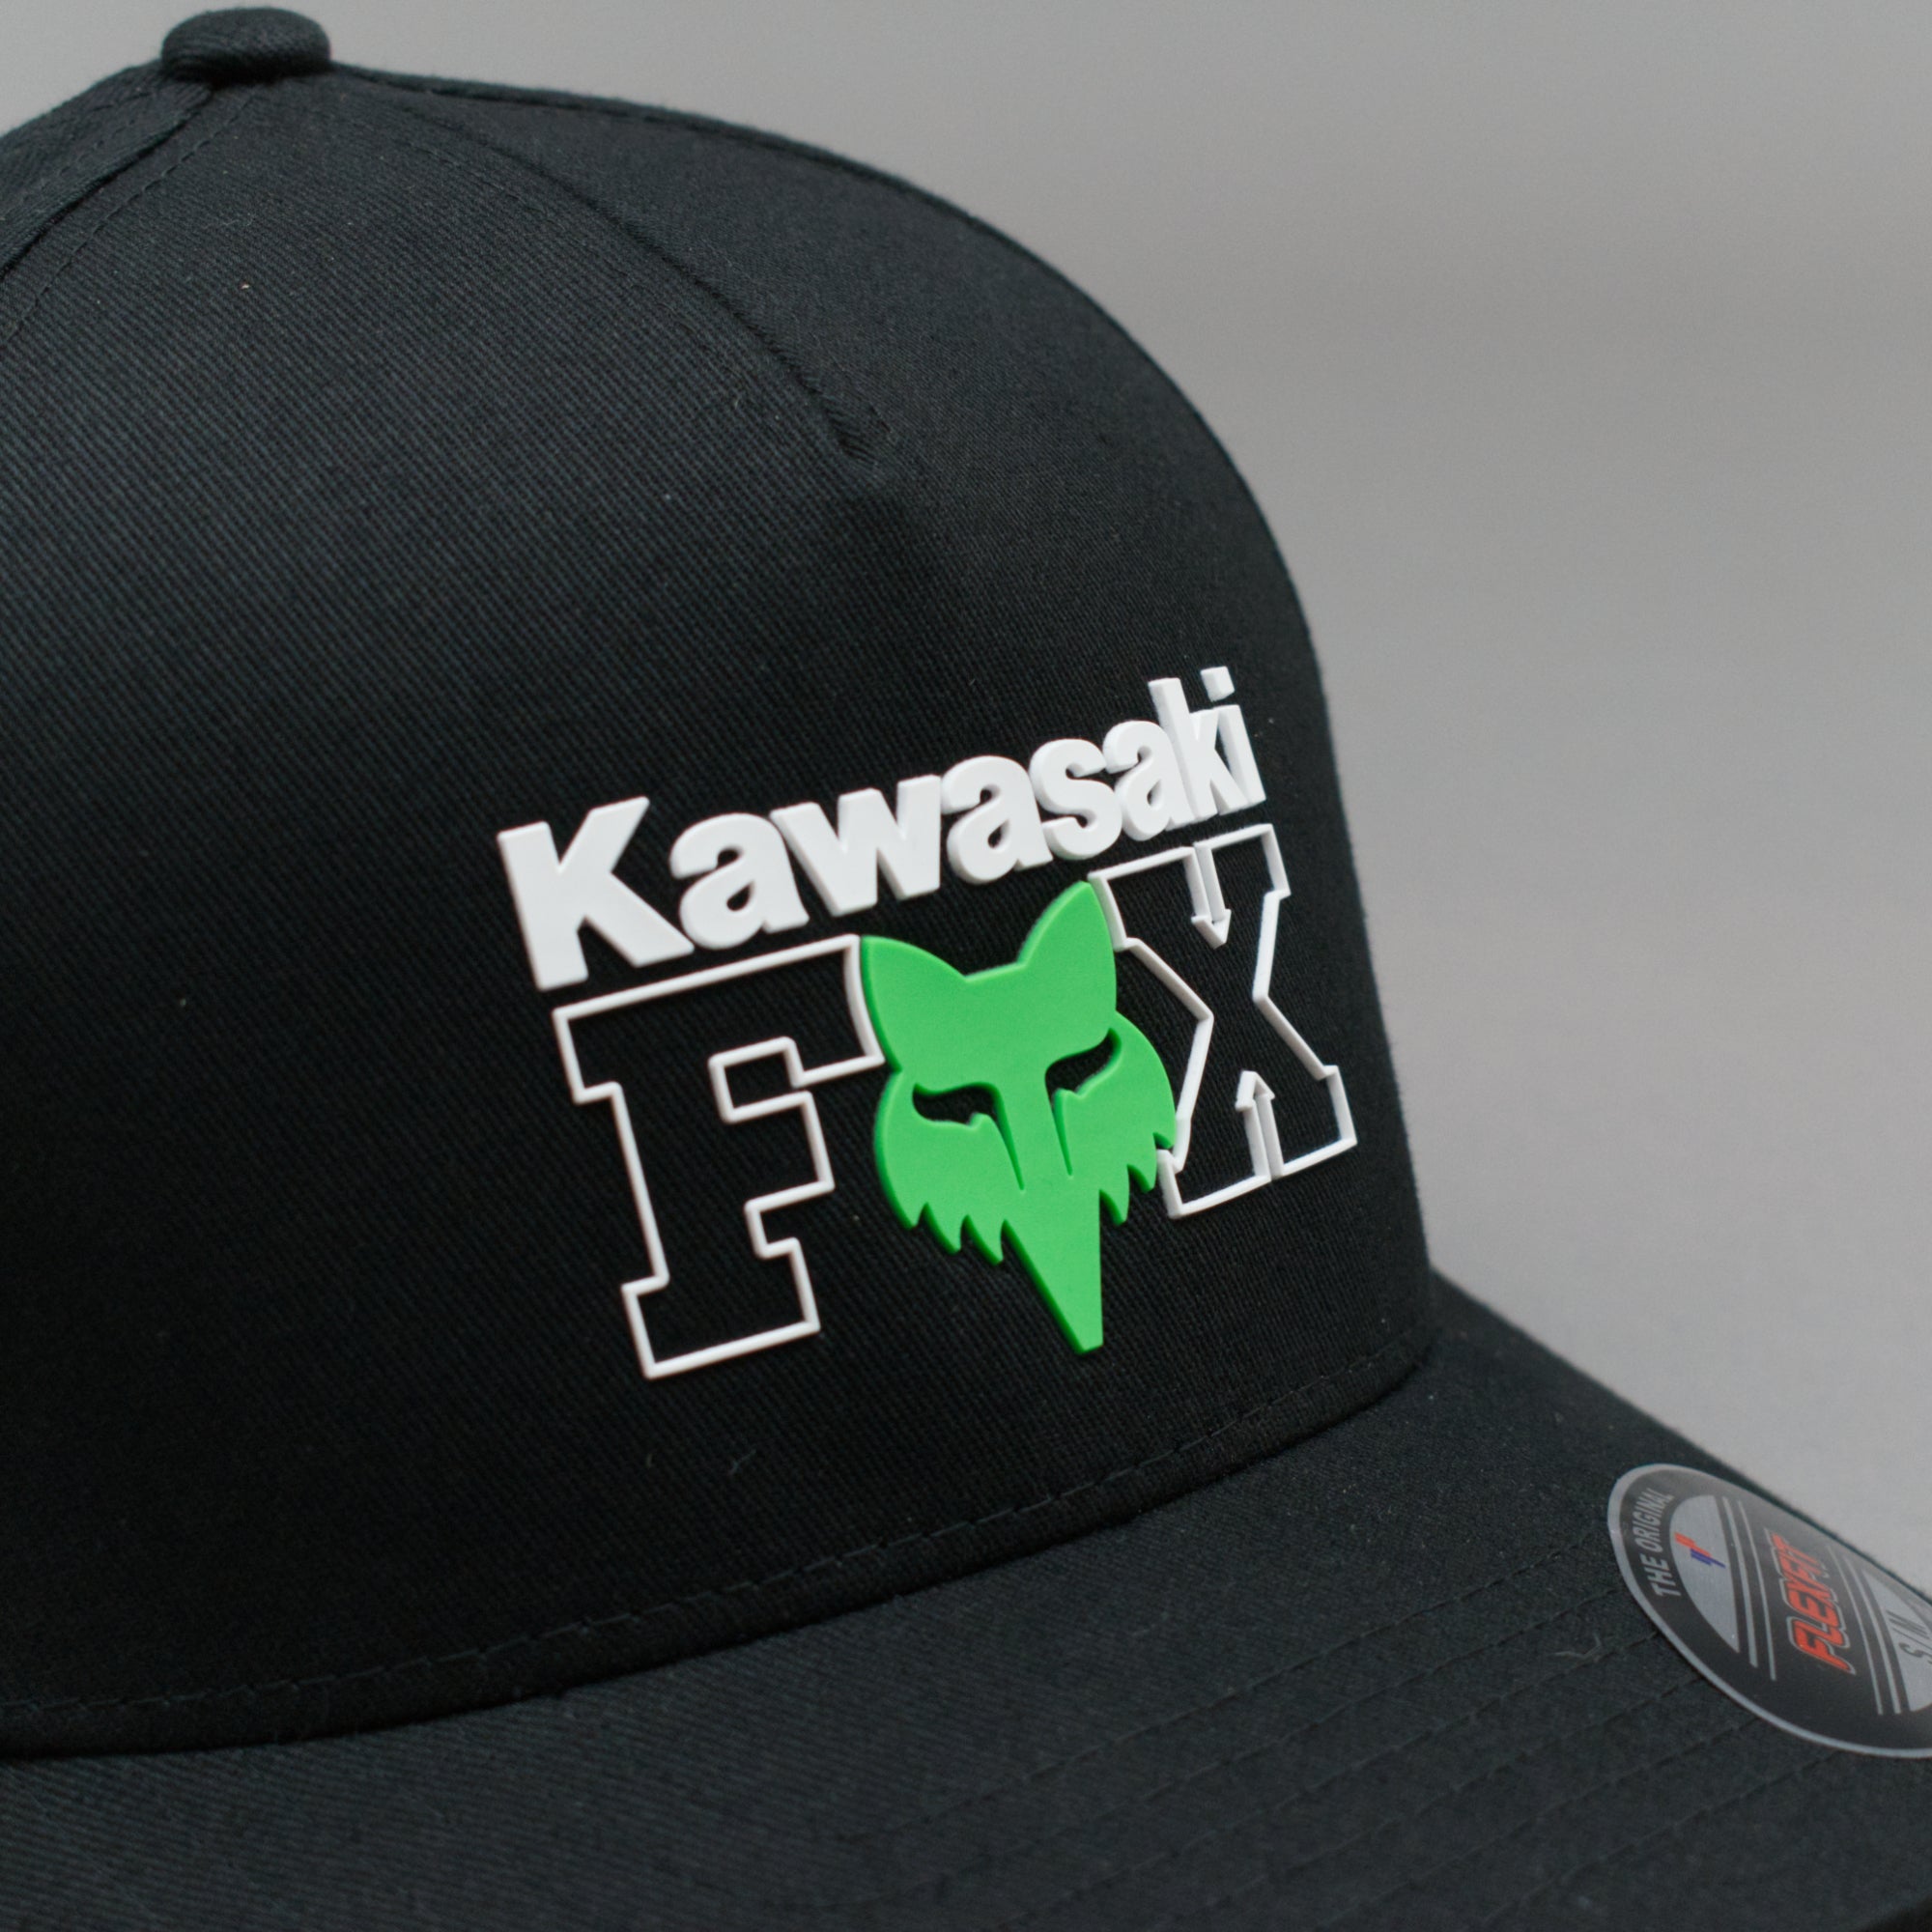 Fox - Kawasaki - Flexfit - Black